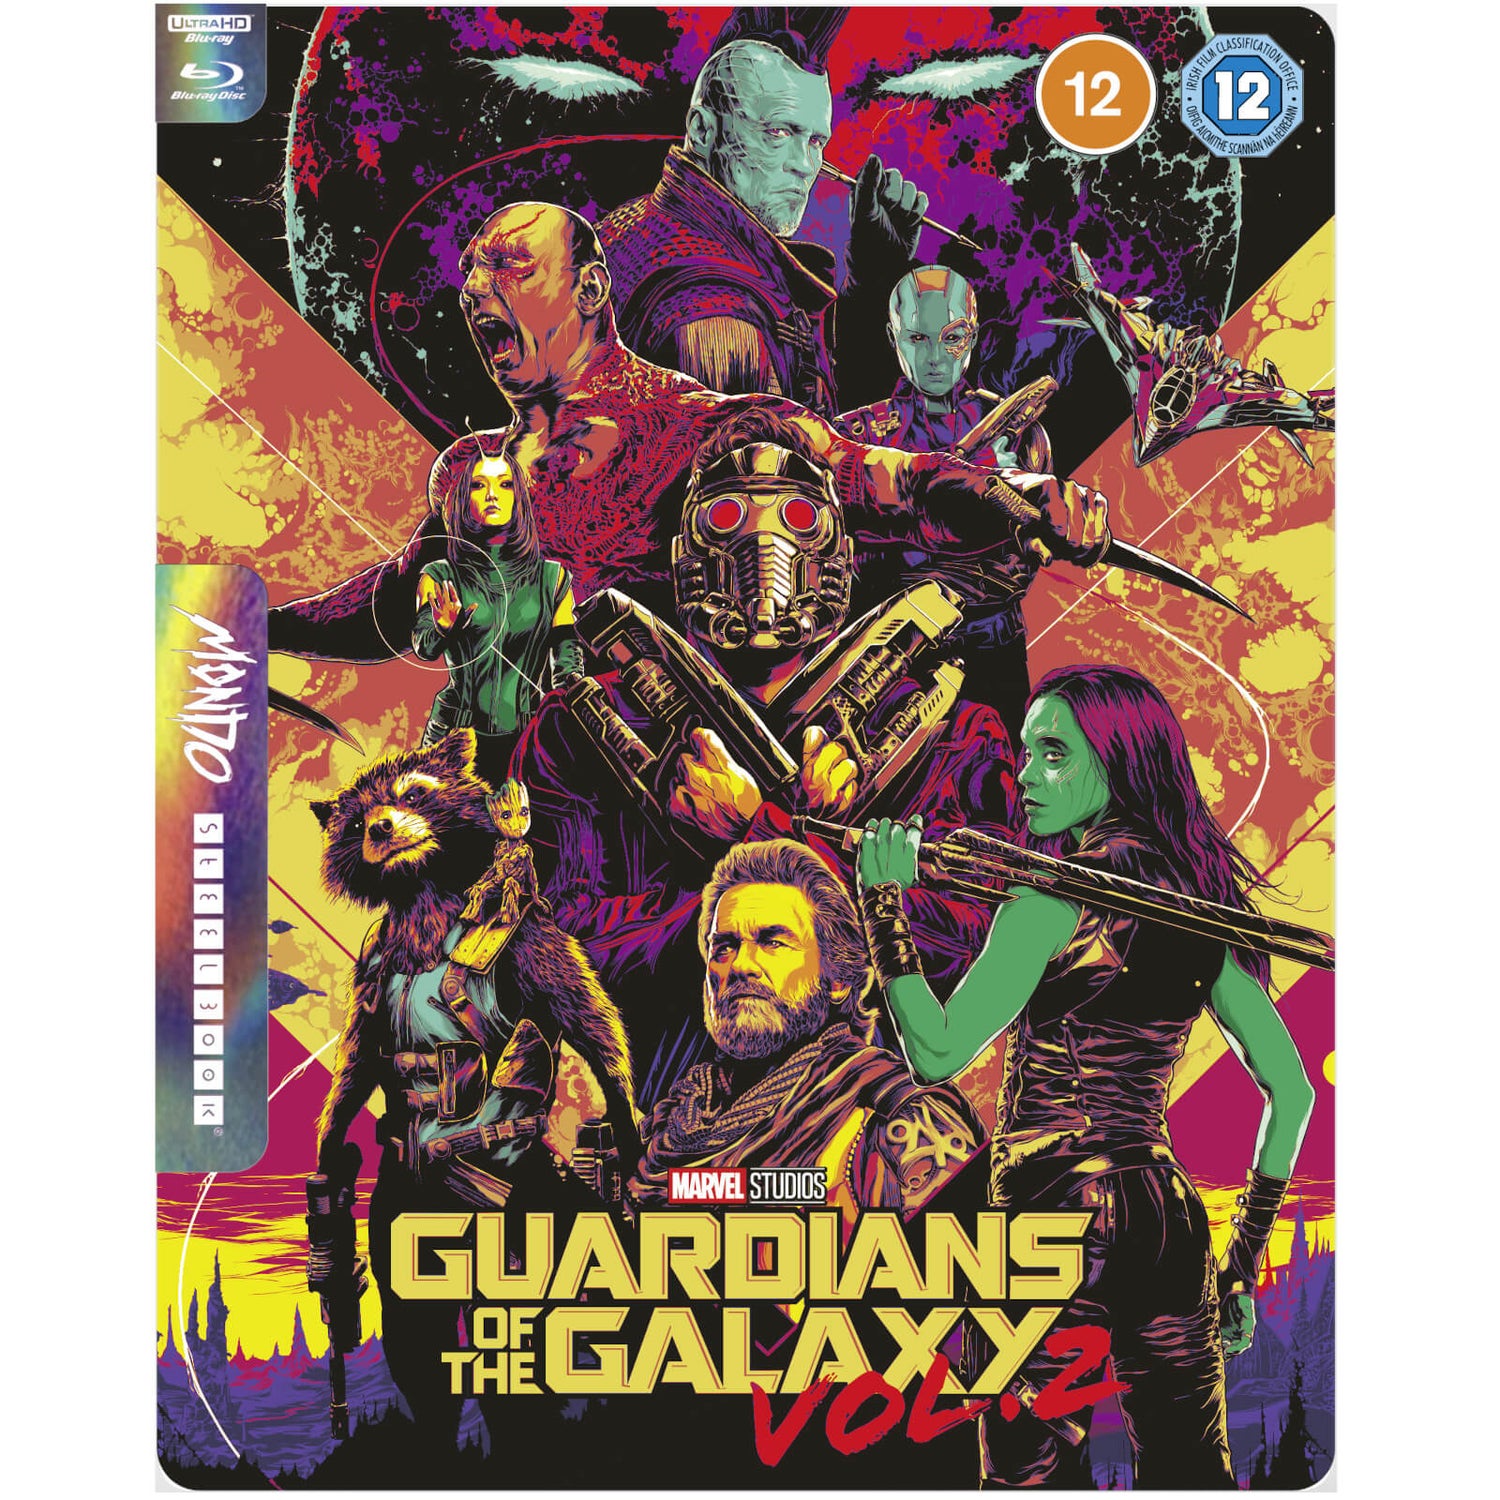 Les Gardiens de la Galaxie Vol. 2 - Steelbook 4K Ultra HD Mondo #52 en Exclusivité Zavvi (Blu-ray inclus)